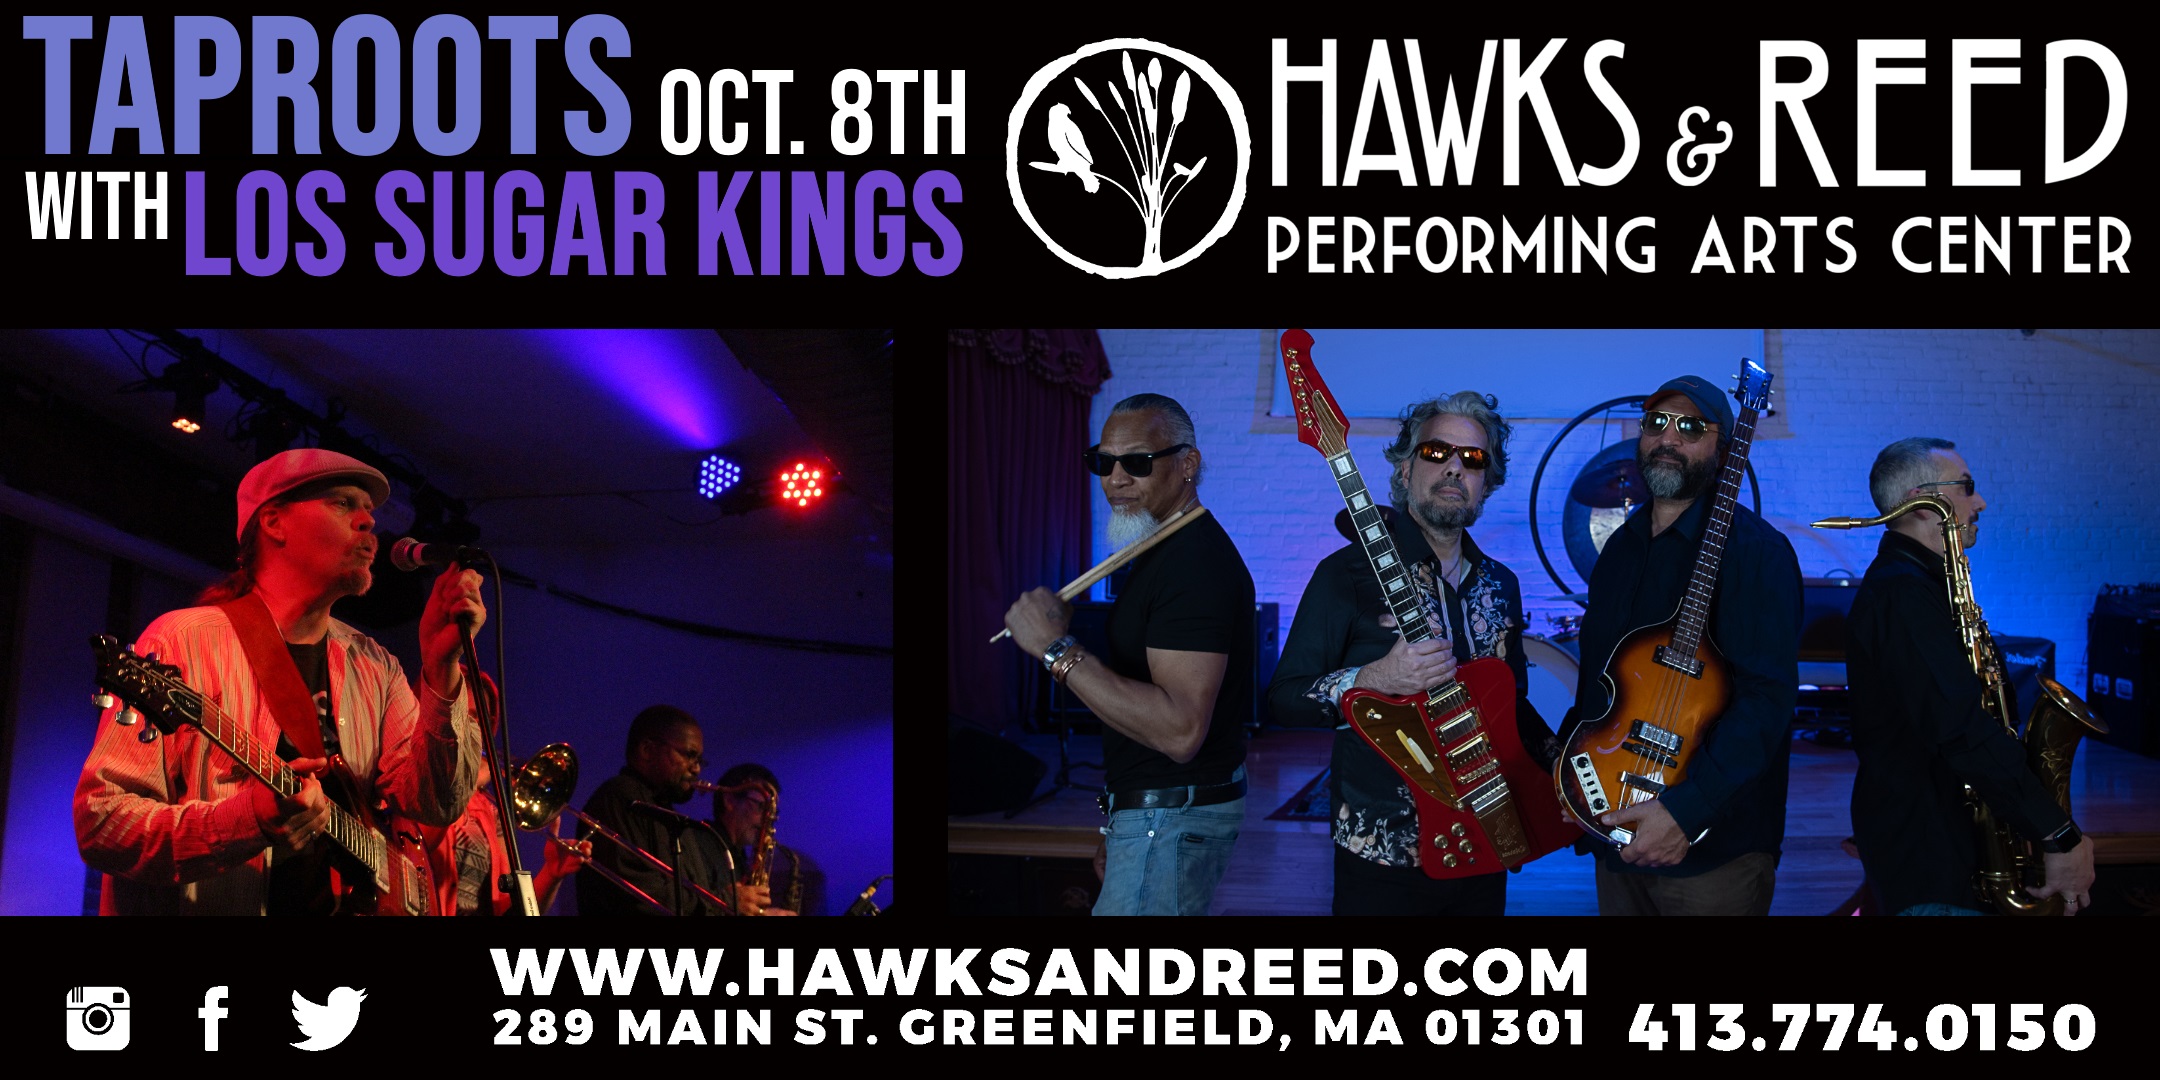 Taproots with Los Sugar Kings at Hawks & Reed